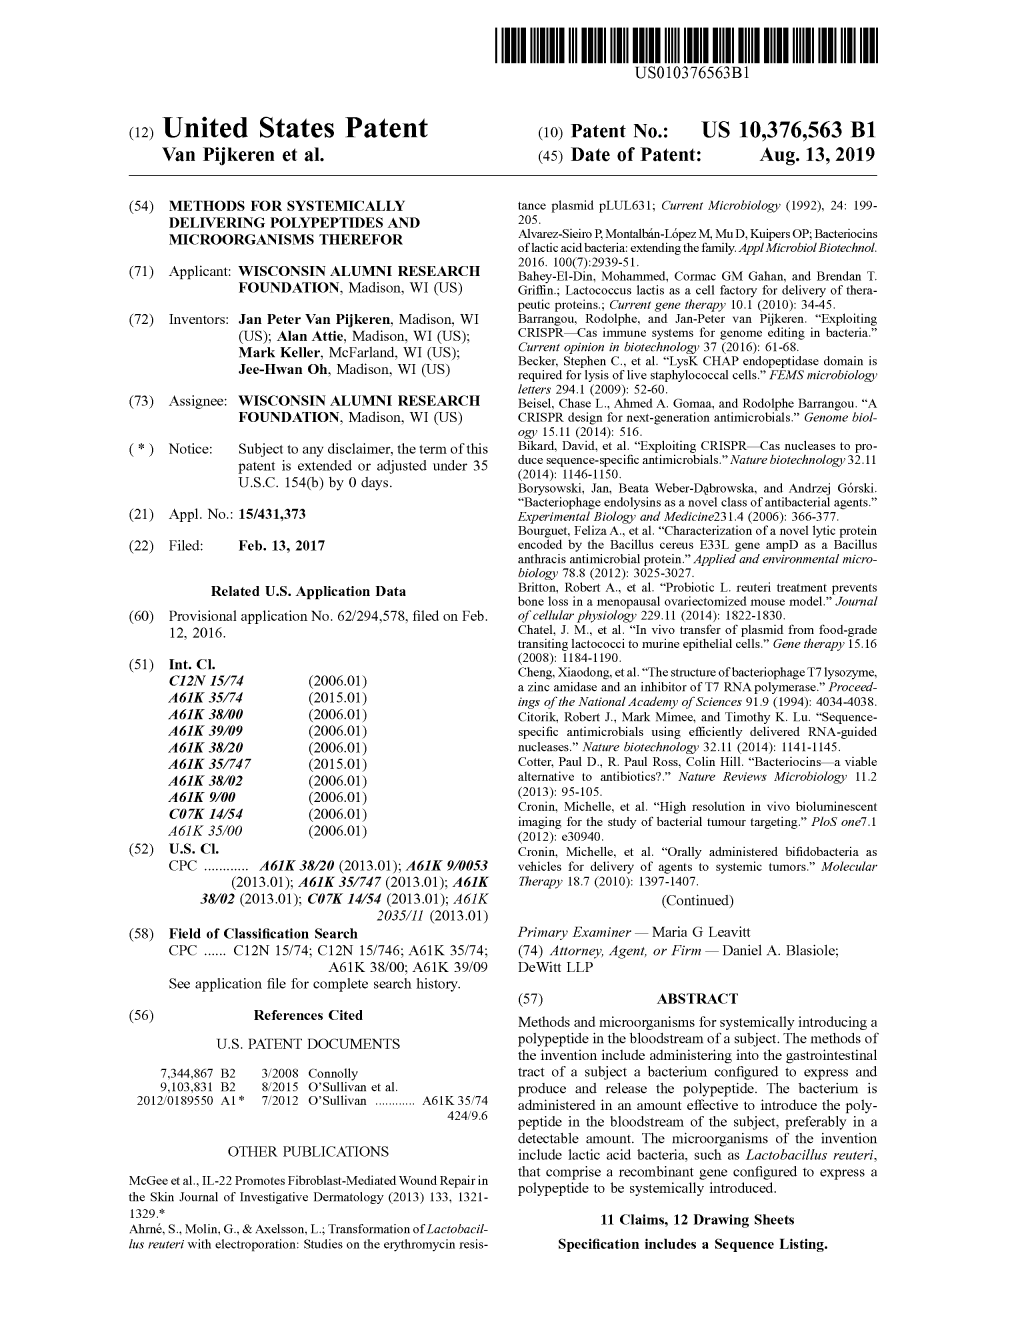 View U.S. Patent No. 10376563 in PDF